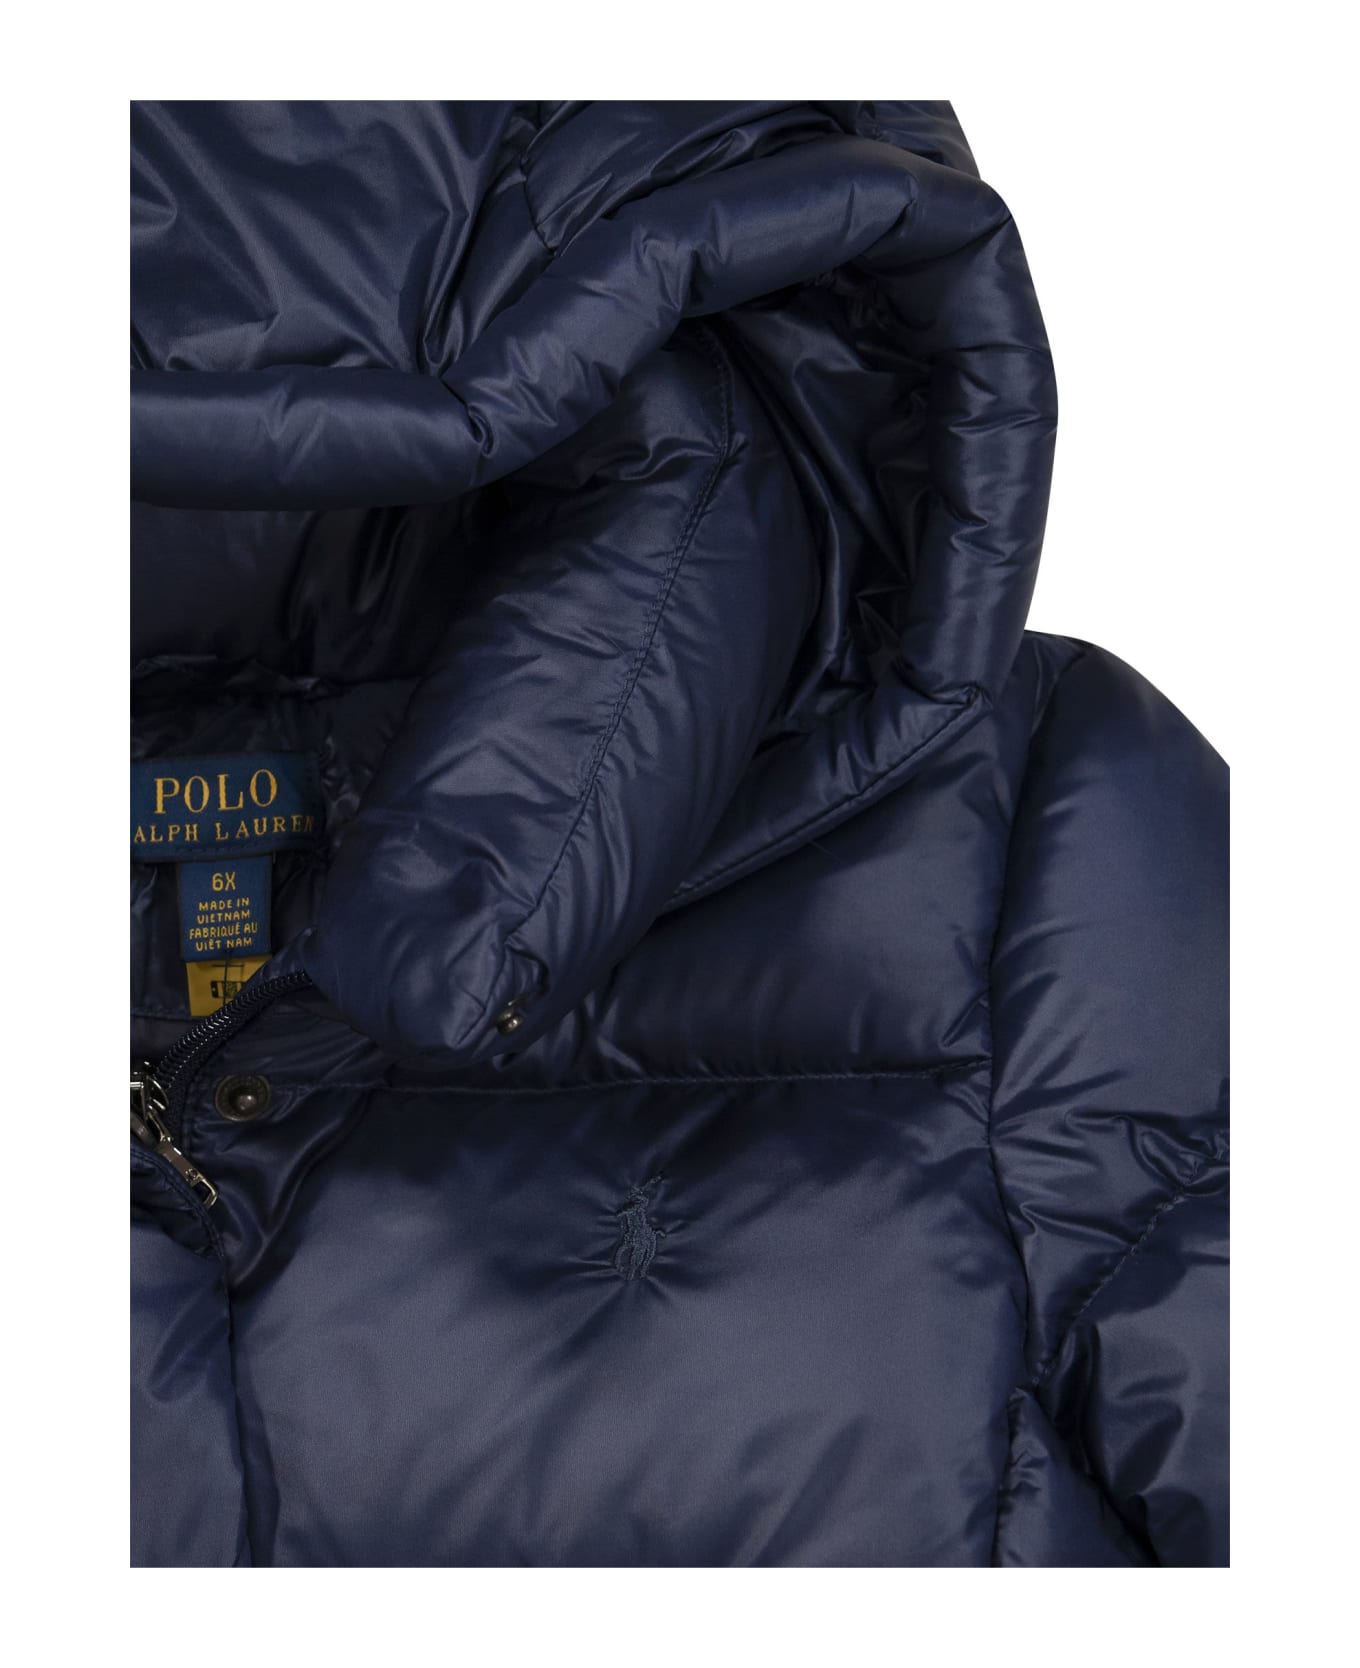 Polo Ralph Lauren Water-resistant Long Down Jacket - Navy